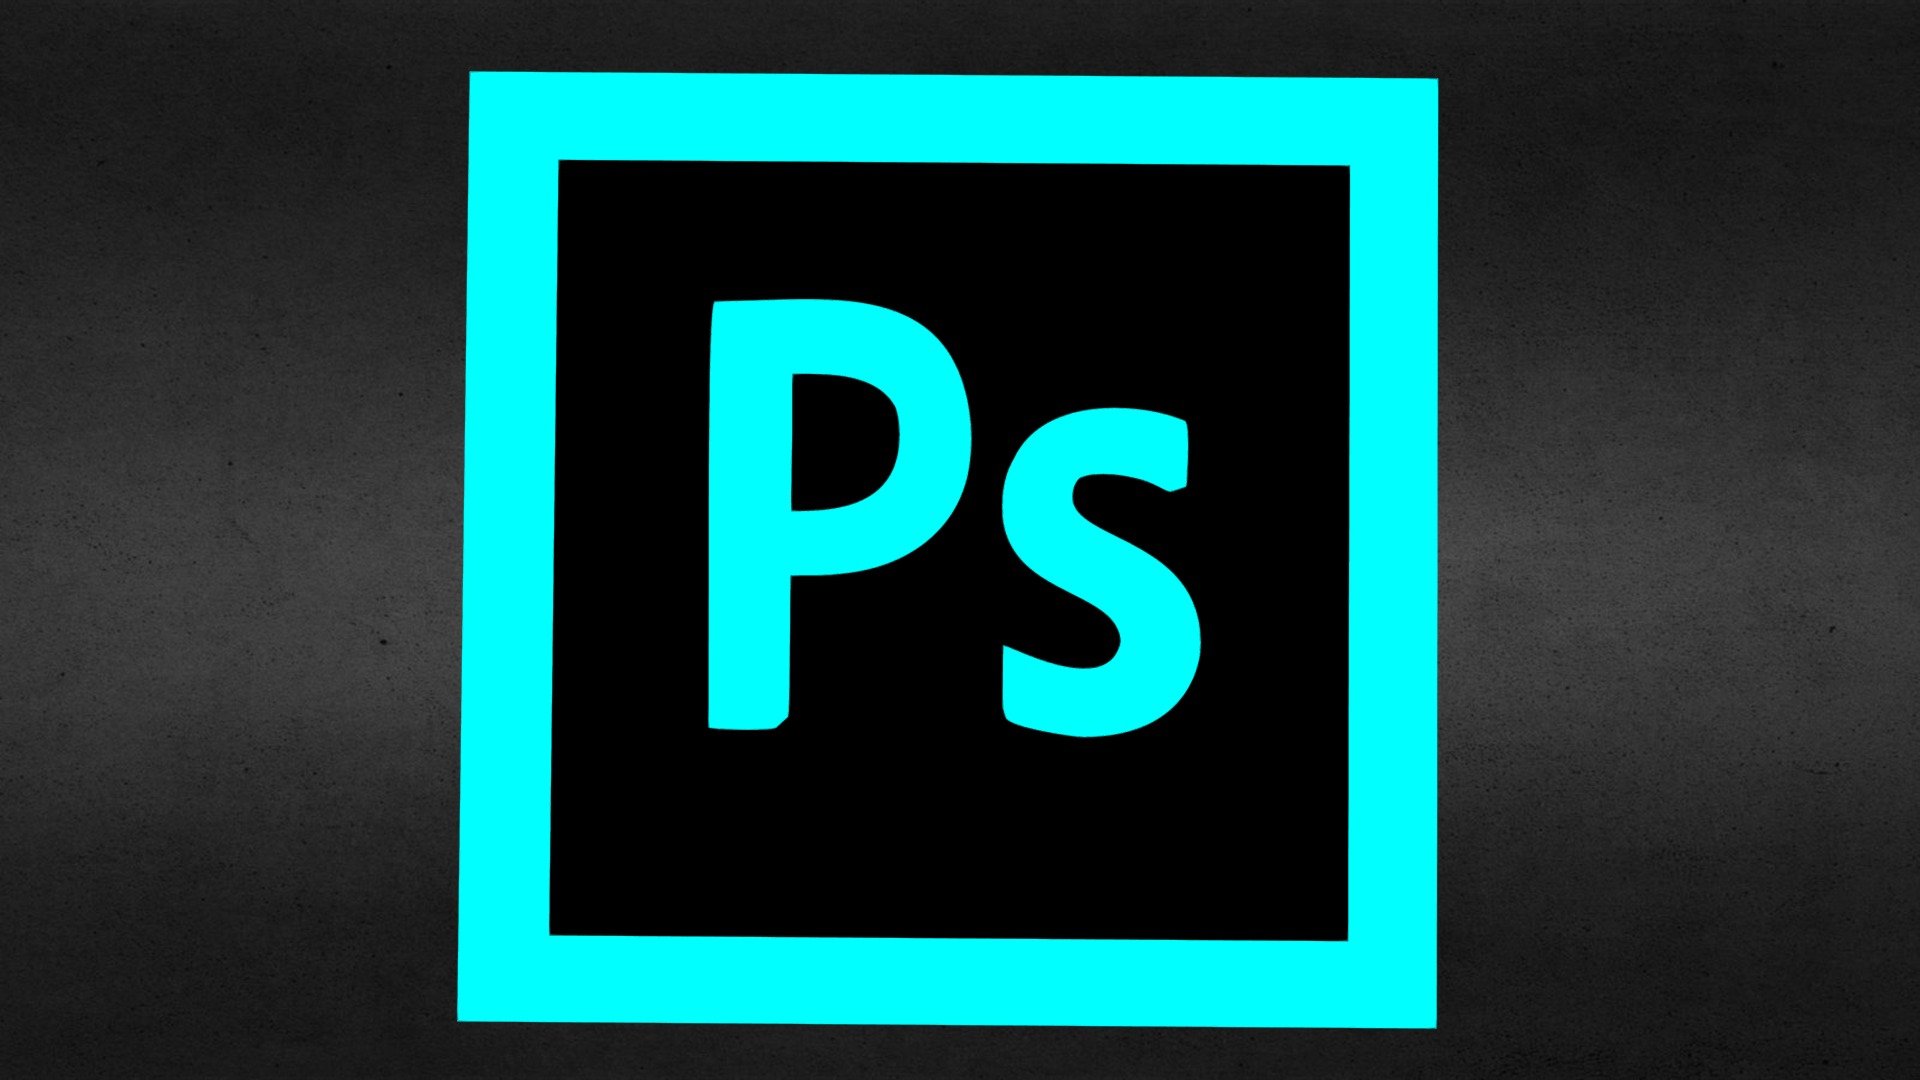 3D PhotoShop icon with secret